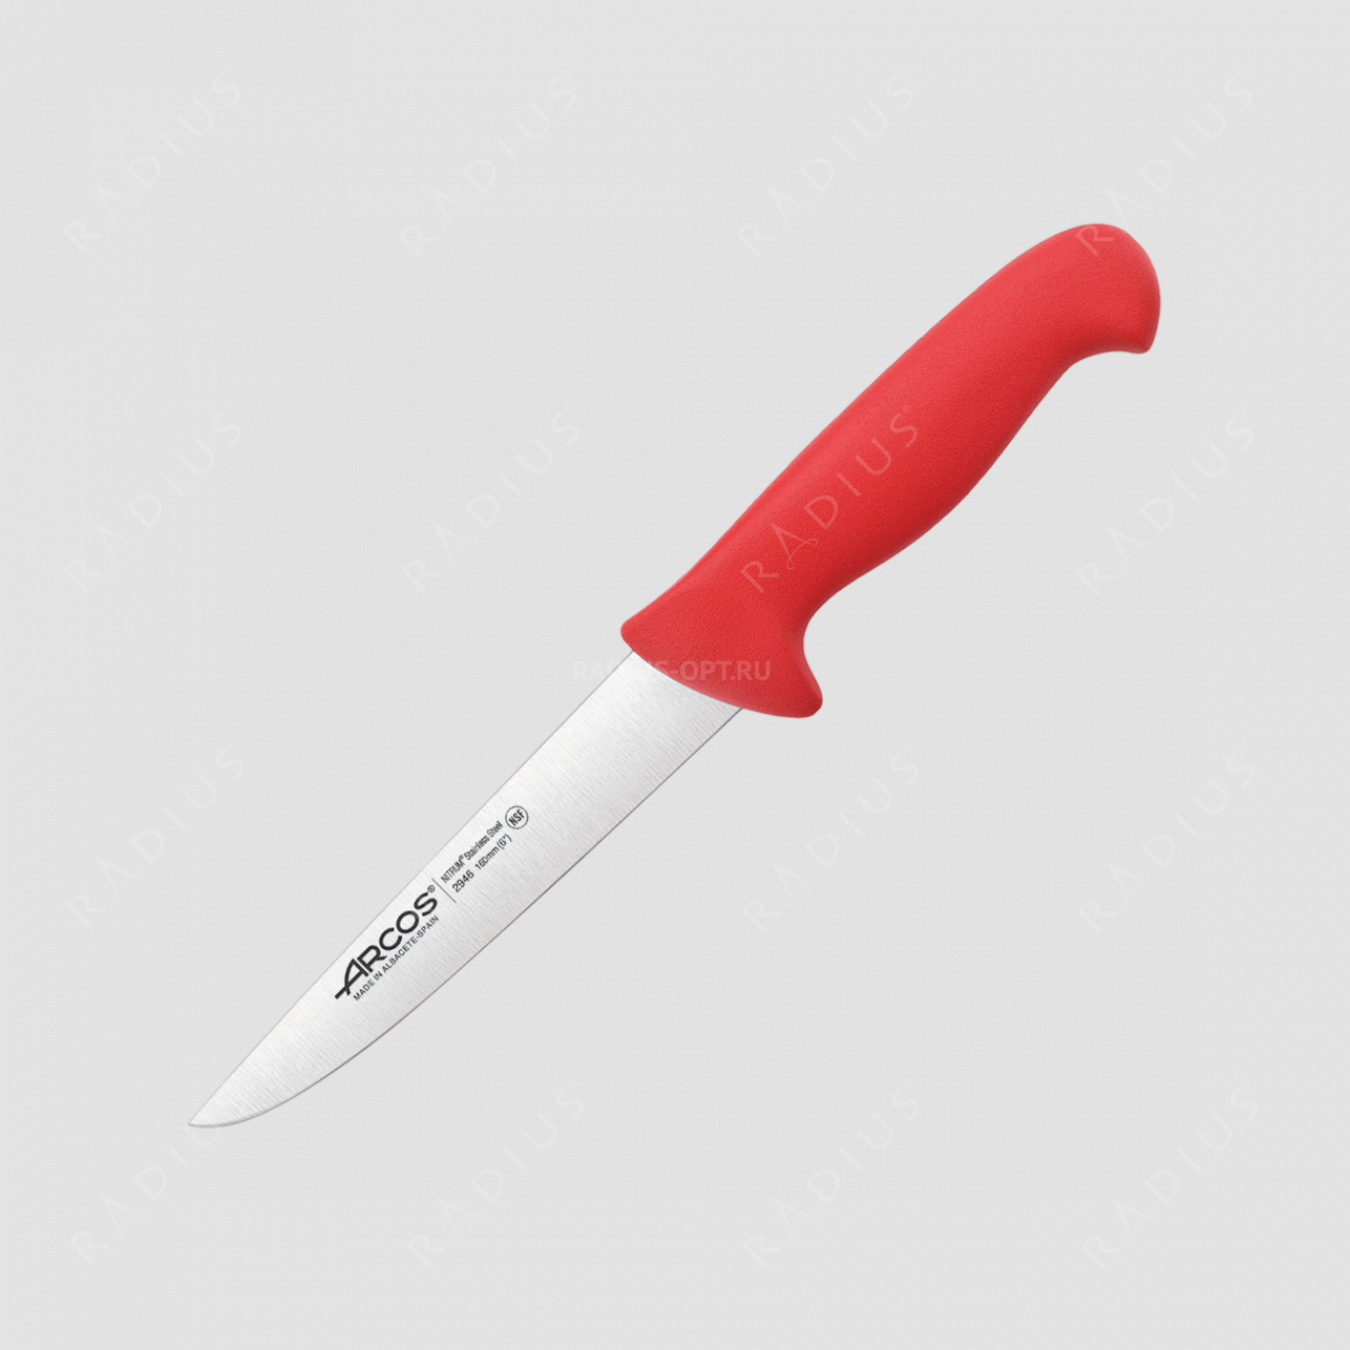 Нож кухонный для разделки мяса 16 см, рукоять - красная, серия 2900, ARCOS, Испания